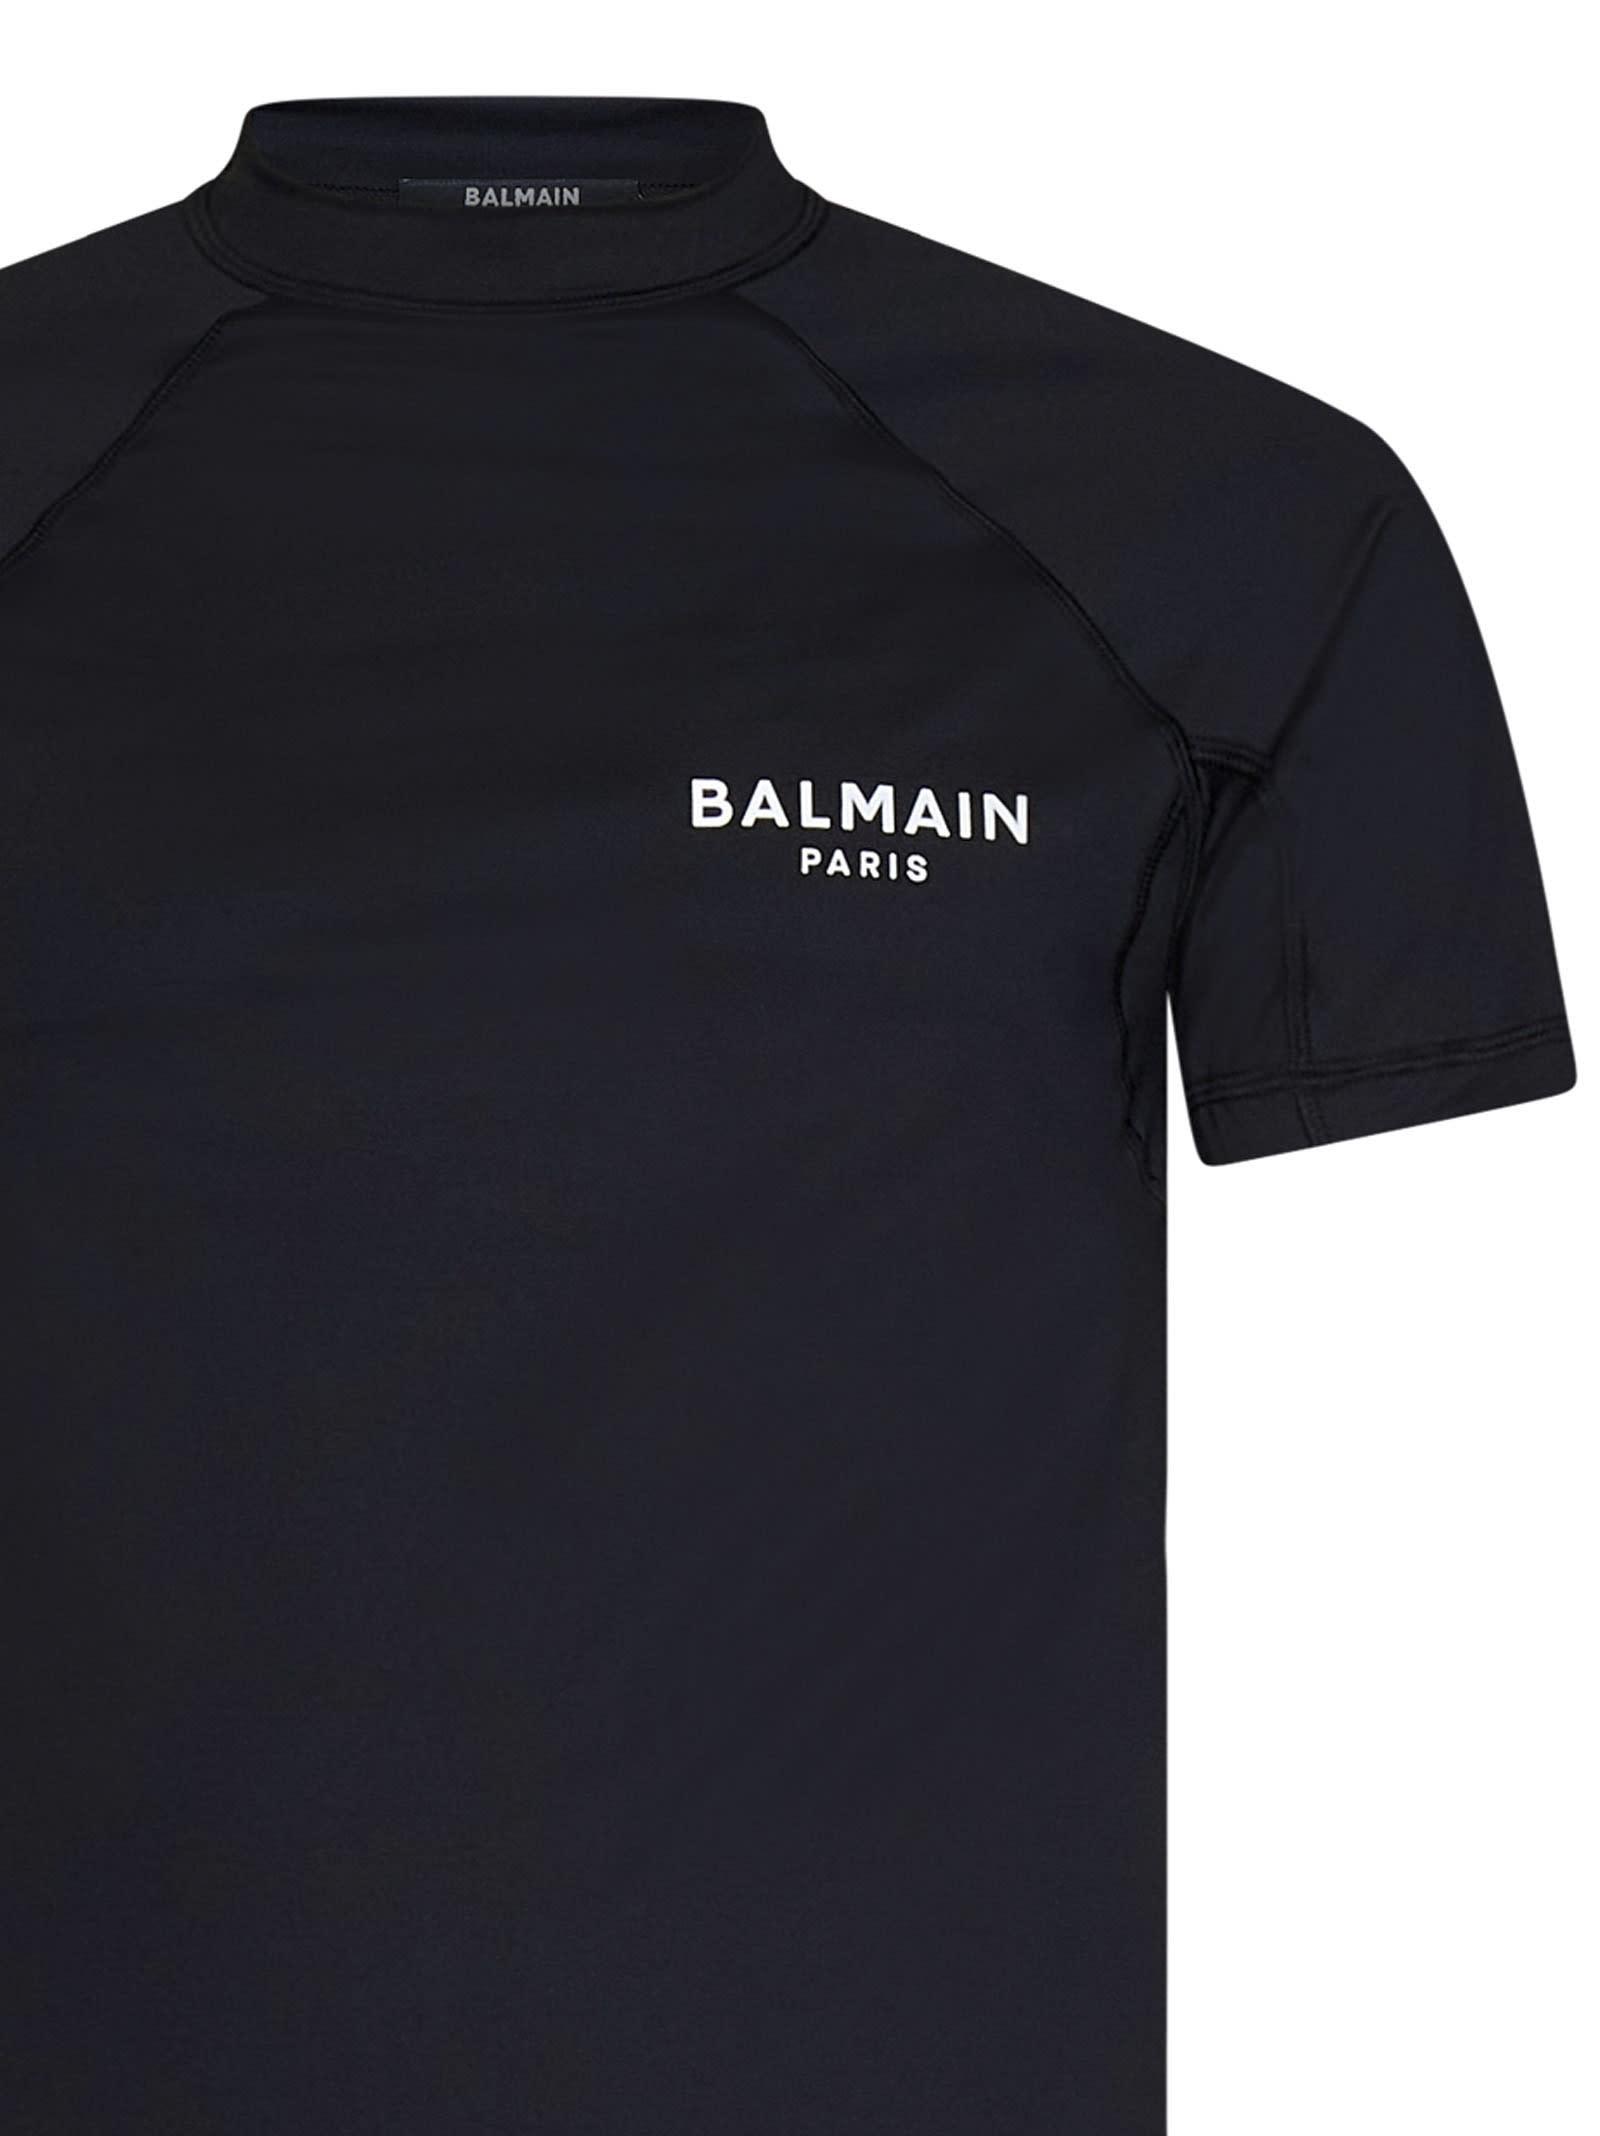 digital Vil tråd Balmain Paris T-shirt in Black for Men | Lyst